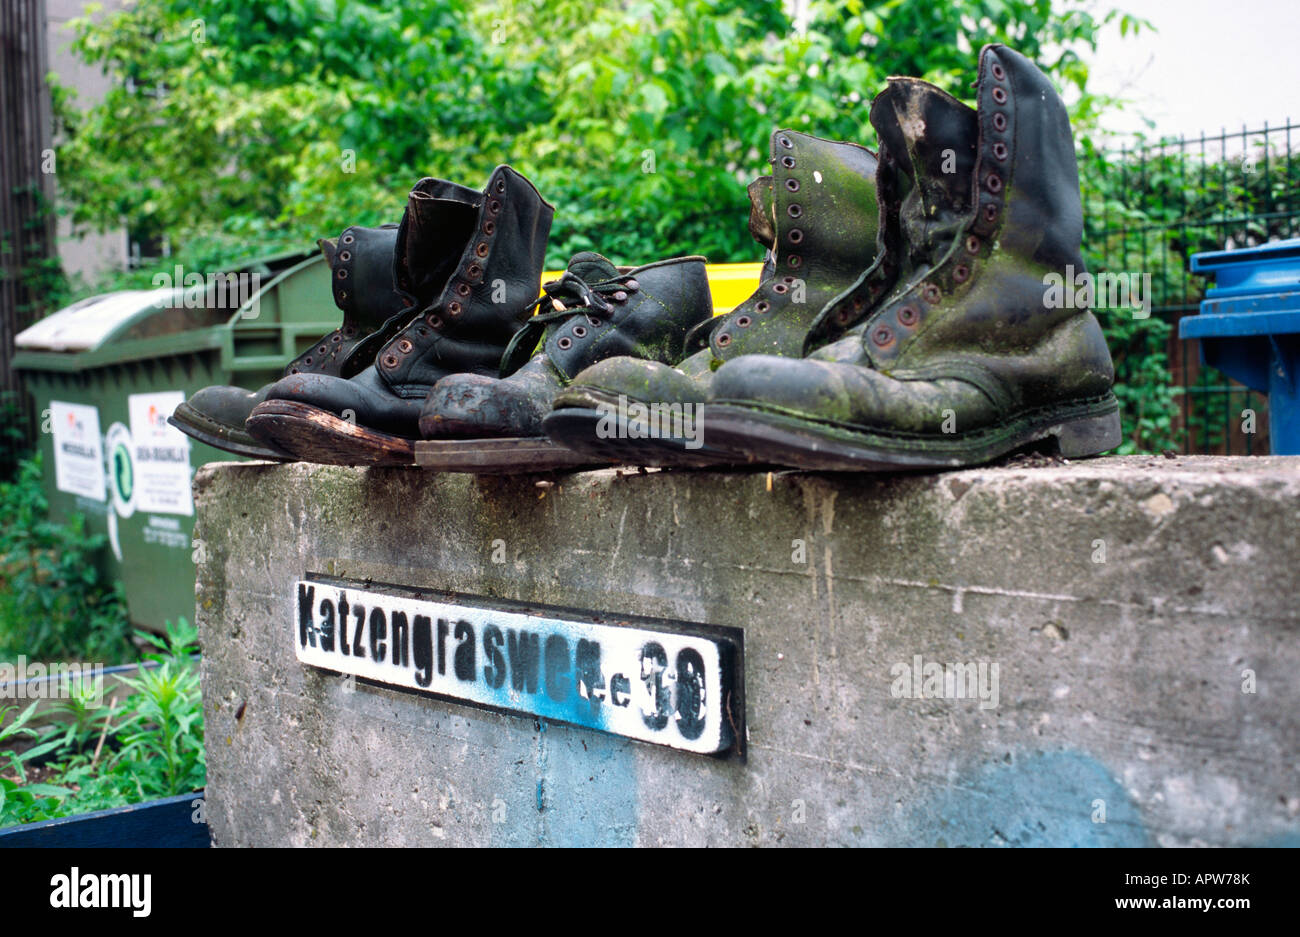 Junio 10, 2005 - usado botas militares en un punto de recogida de residuos en Berlín, en el distrito de Prenzlauer Berg. Foto de stock